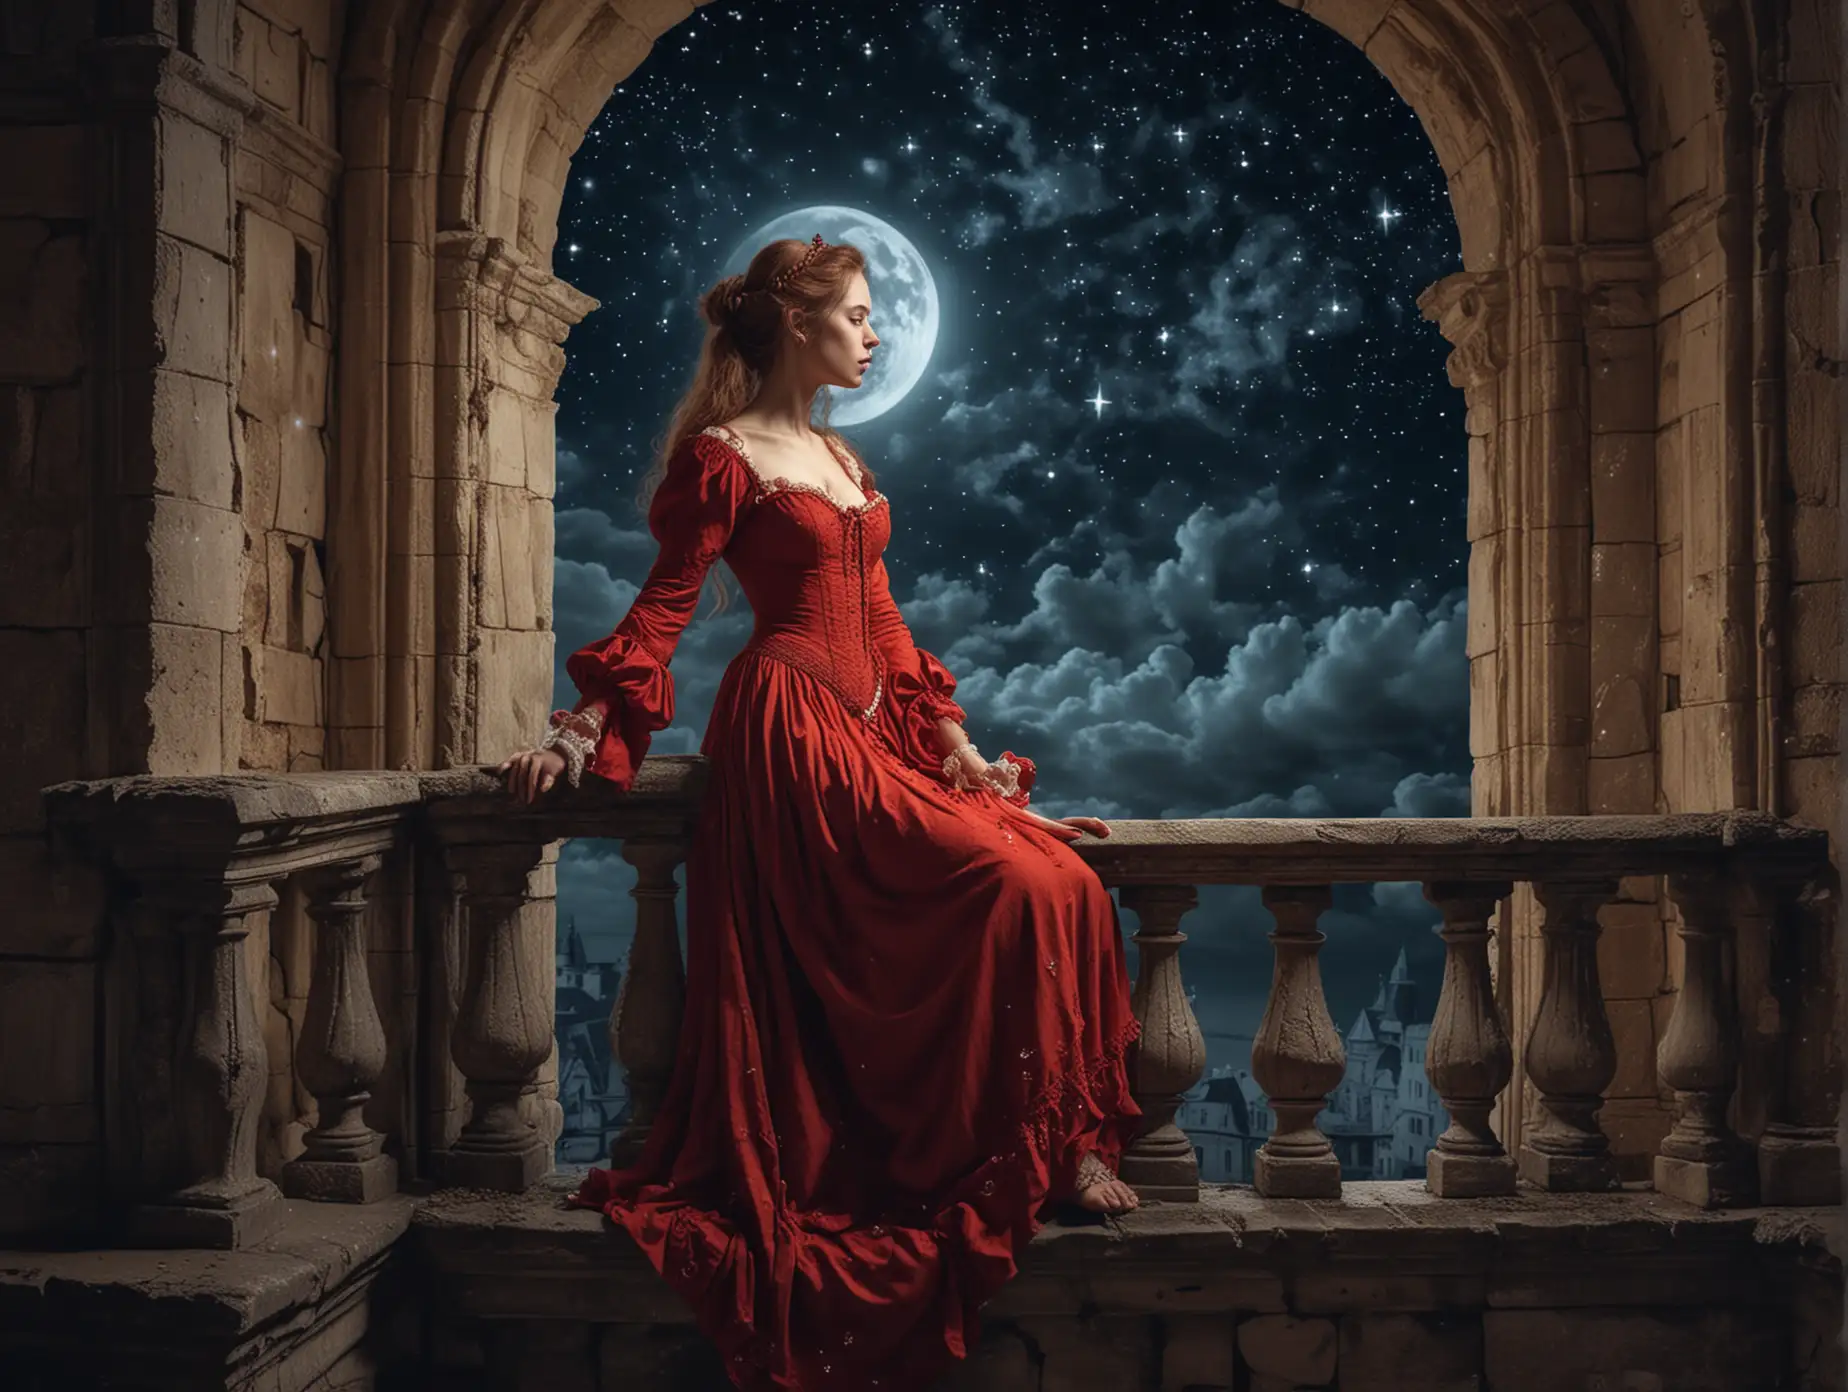 рыжая девица в неглиже набалконе старинного замка считает звёзды лунной ночью высокодетализированное изображение в стиле барокко